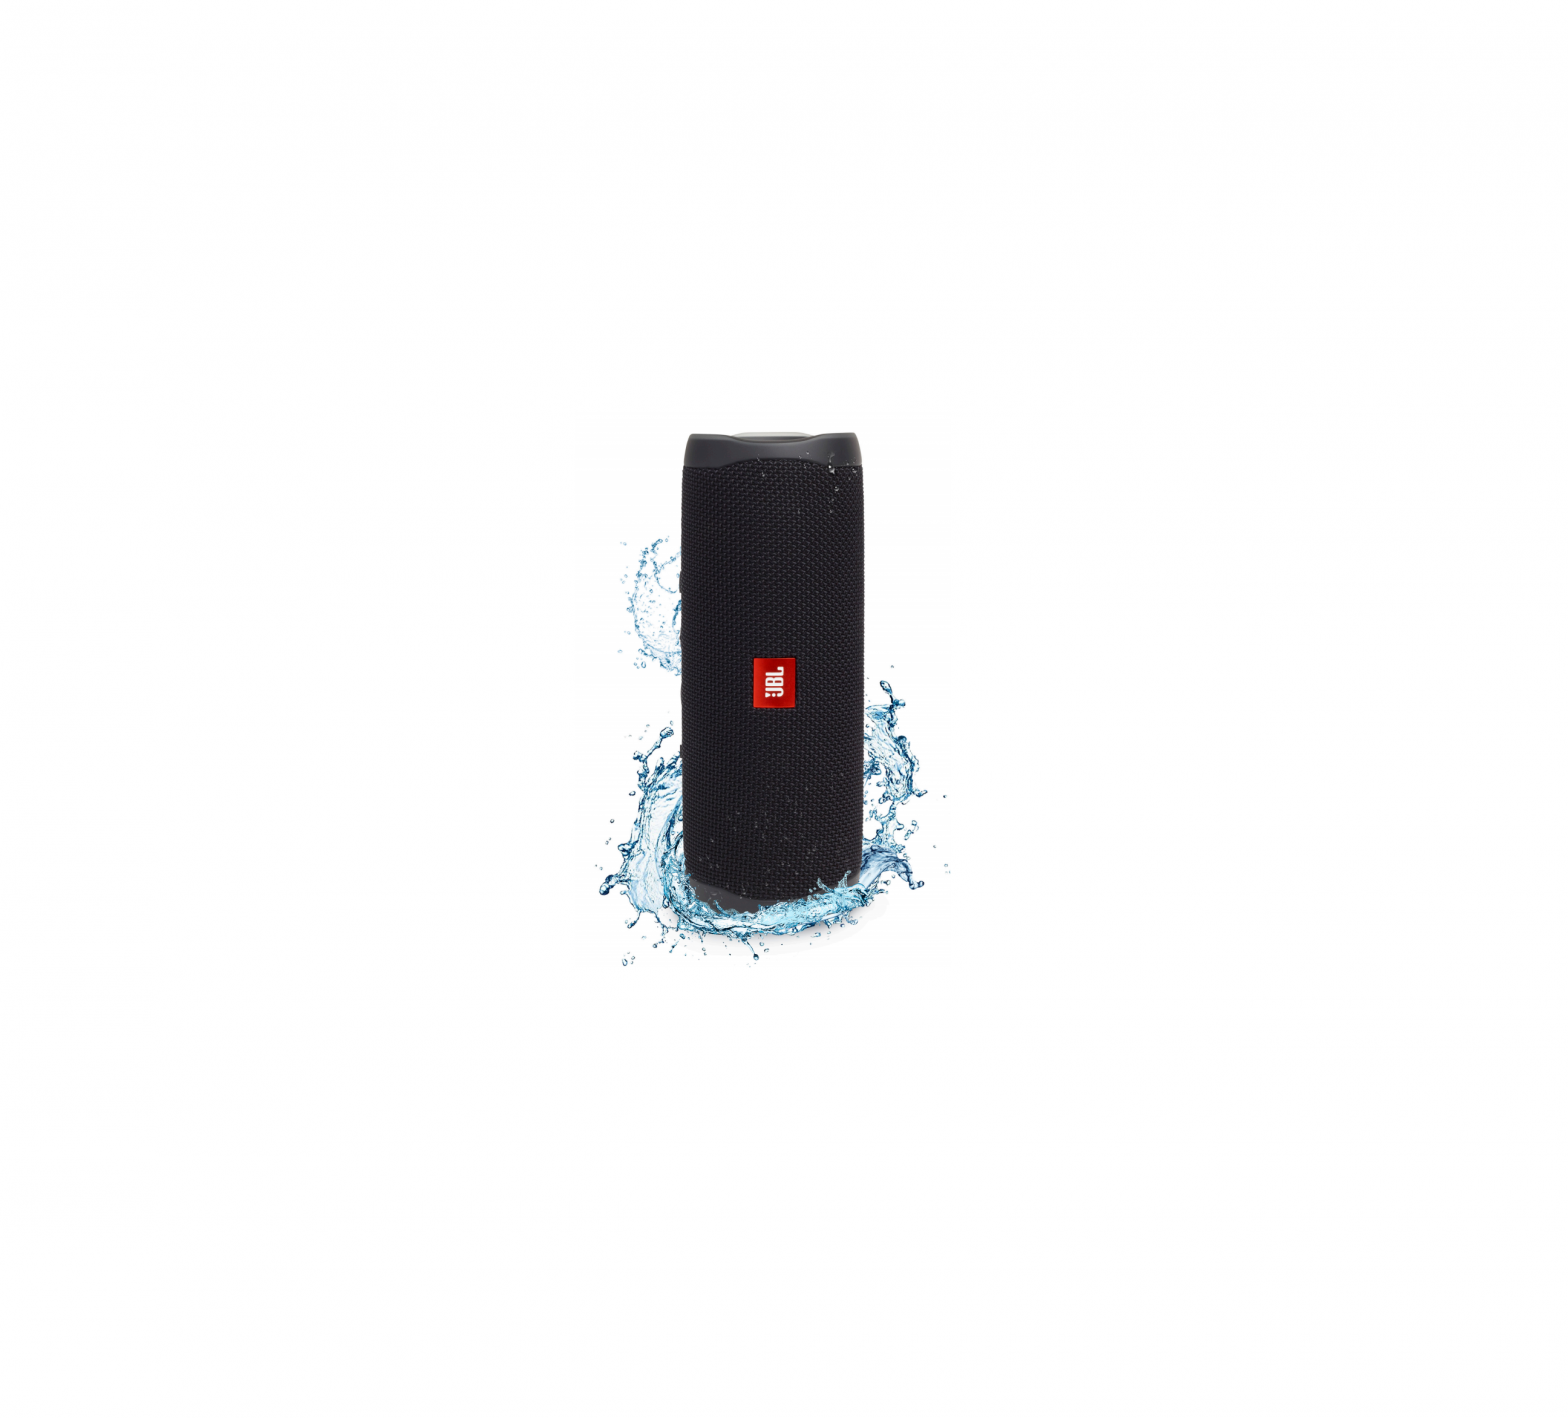 JBL Portable Waterproof Speaker User Guide